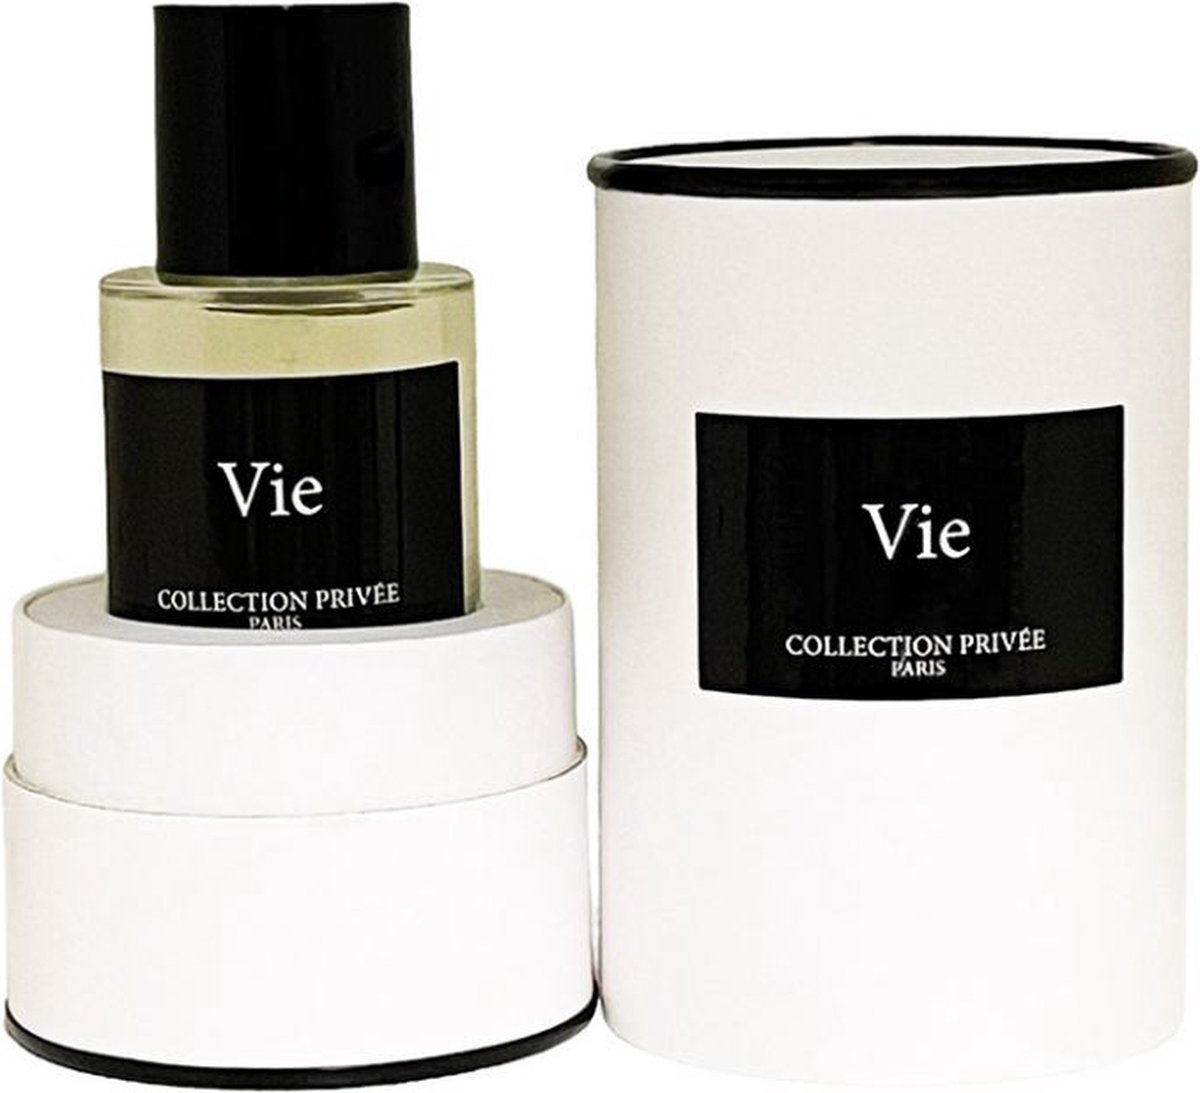 Collection Privee Paris Vie 50 ml Eau de Parfum - Damesparfum